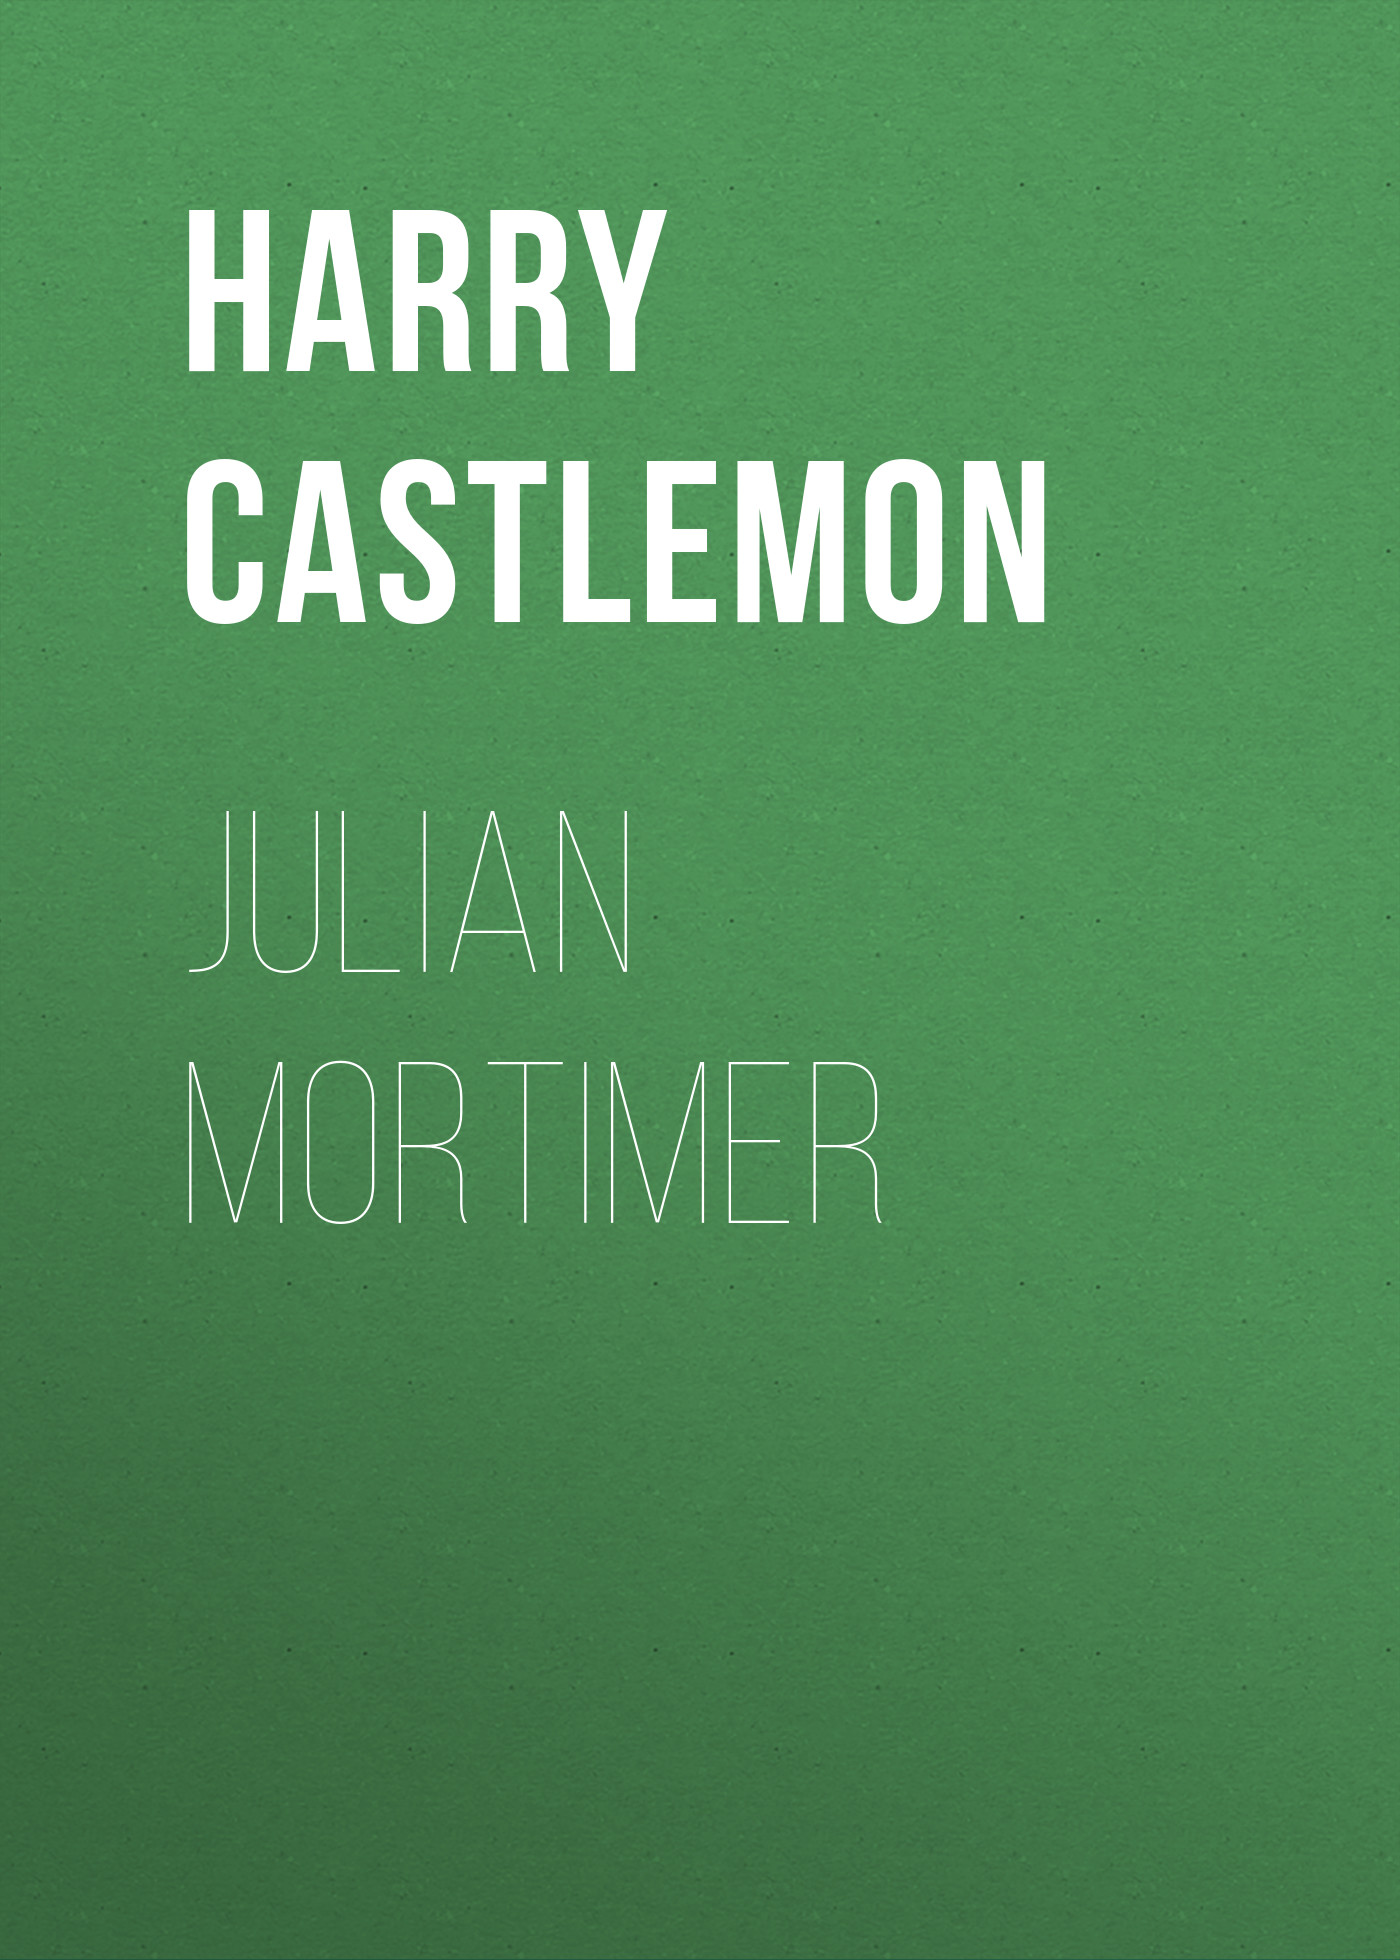 Книга Julian Mortimer из серии , созданная Harry Castlemon, может относится к жанру Зарубежная классика, Иностранные языки. Стоимость электронной книги Julian Mortimer с идентификатором 23162811 составляет 5.99 руб.